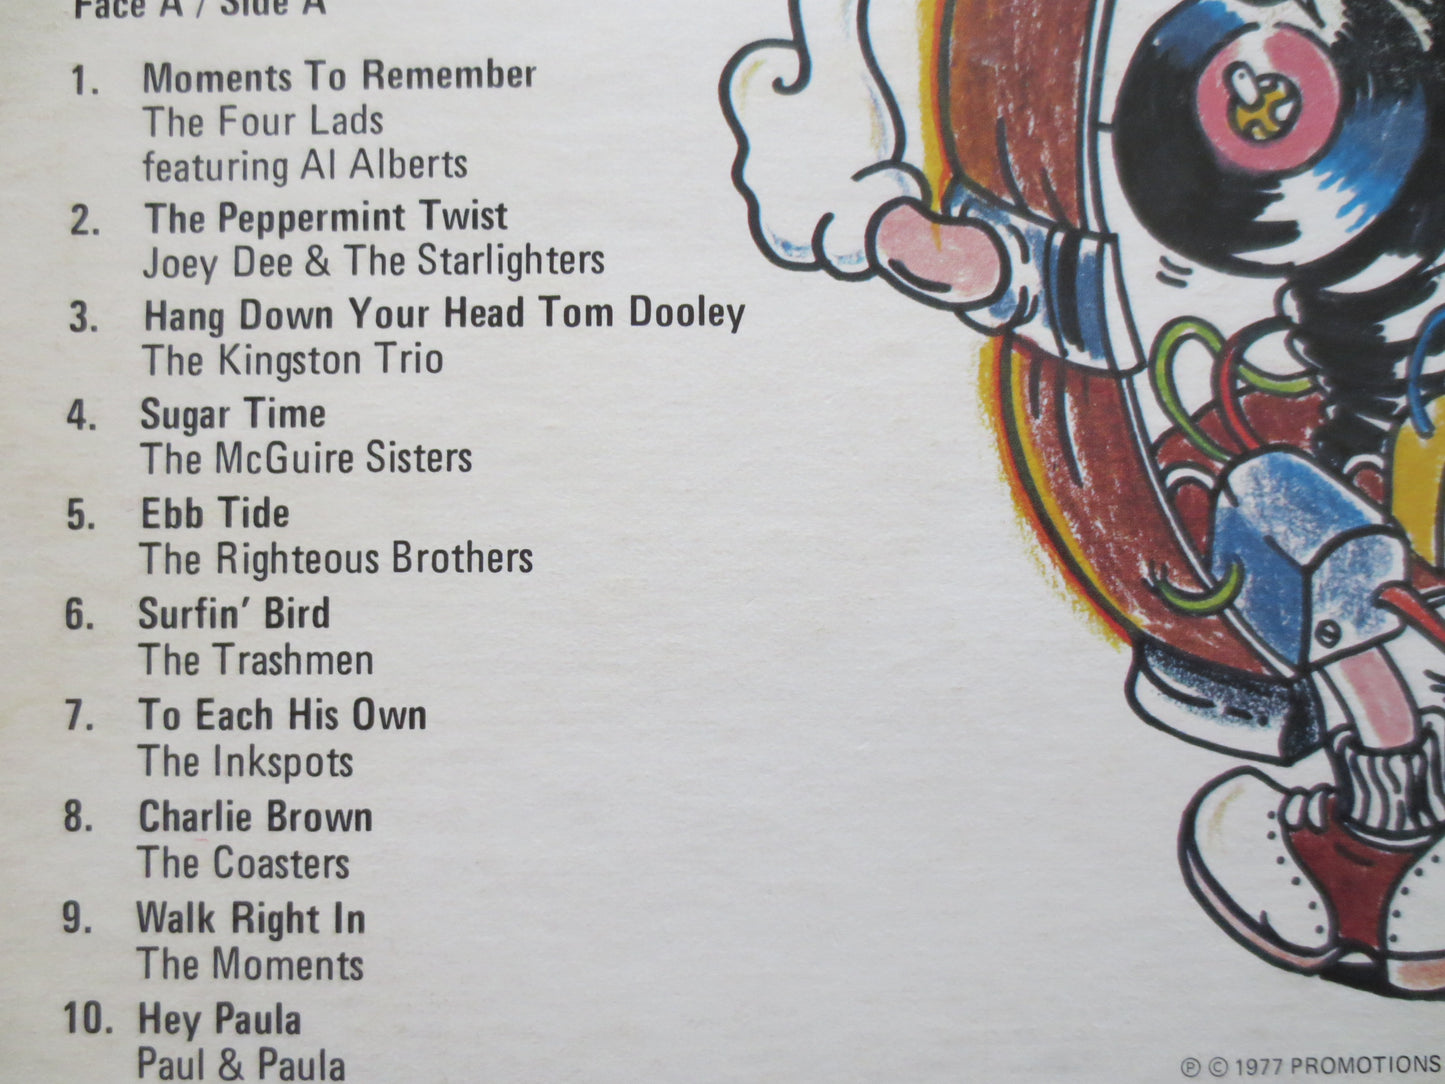 MOMENTS to REMEMBER, Four Lads Lp, The Drifters Lp, Bill Haley Lp, Crew Cuts Lp, Platters Lp, Inkspots Lp, LP, 1977 Records